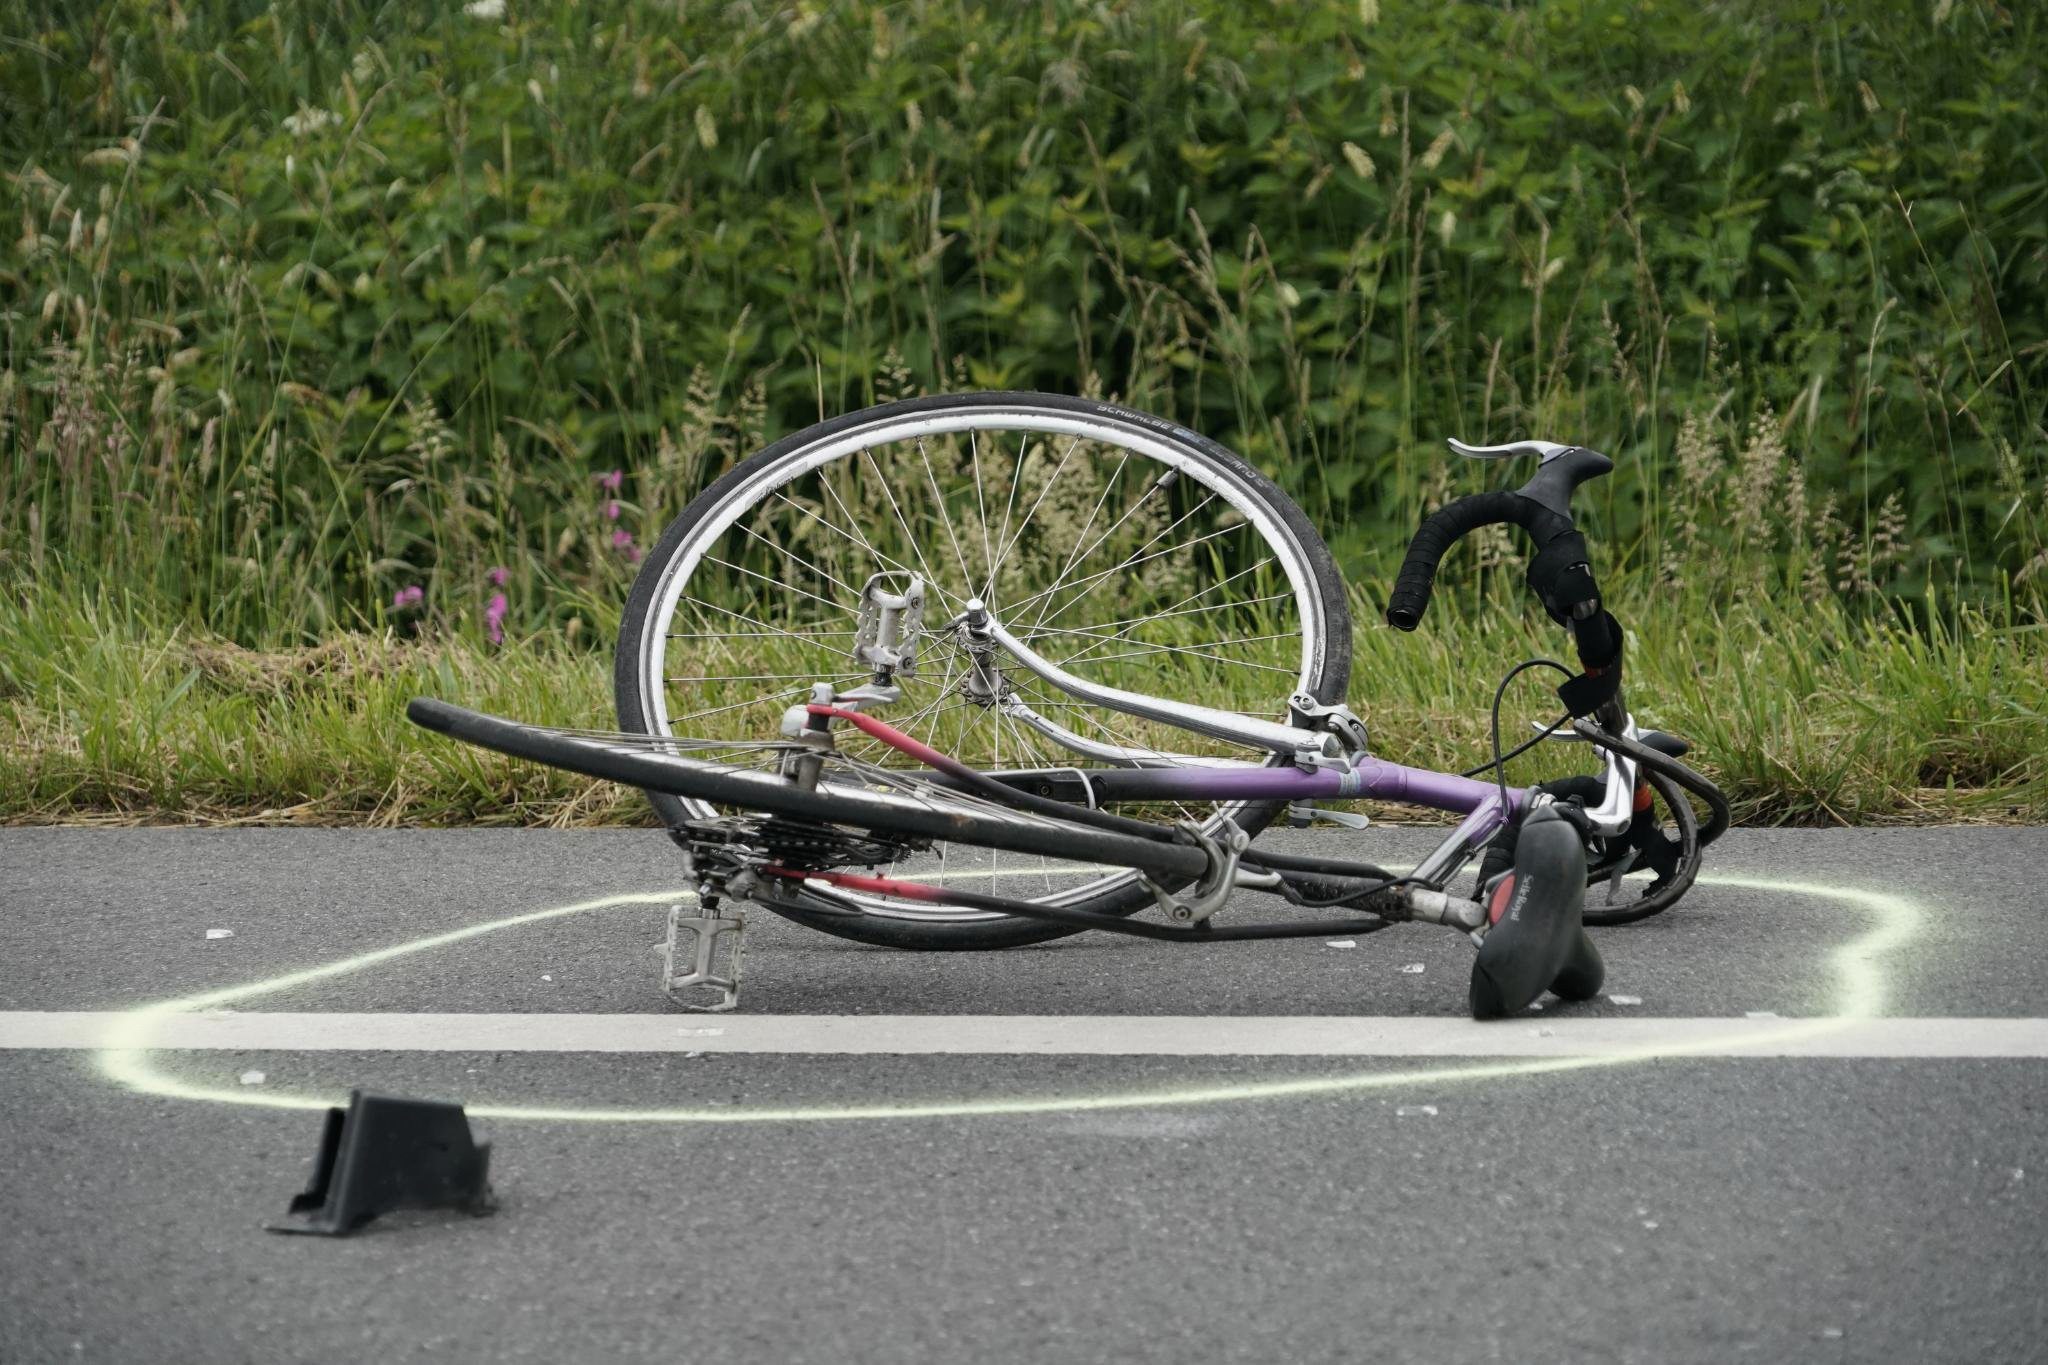 Bei Bad Oldesloe: Senior erfasst Radfahrer beim Überholen und verletzt ihn. Danach flüchtet der Mann mit seinem Auto